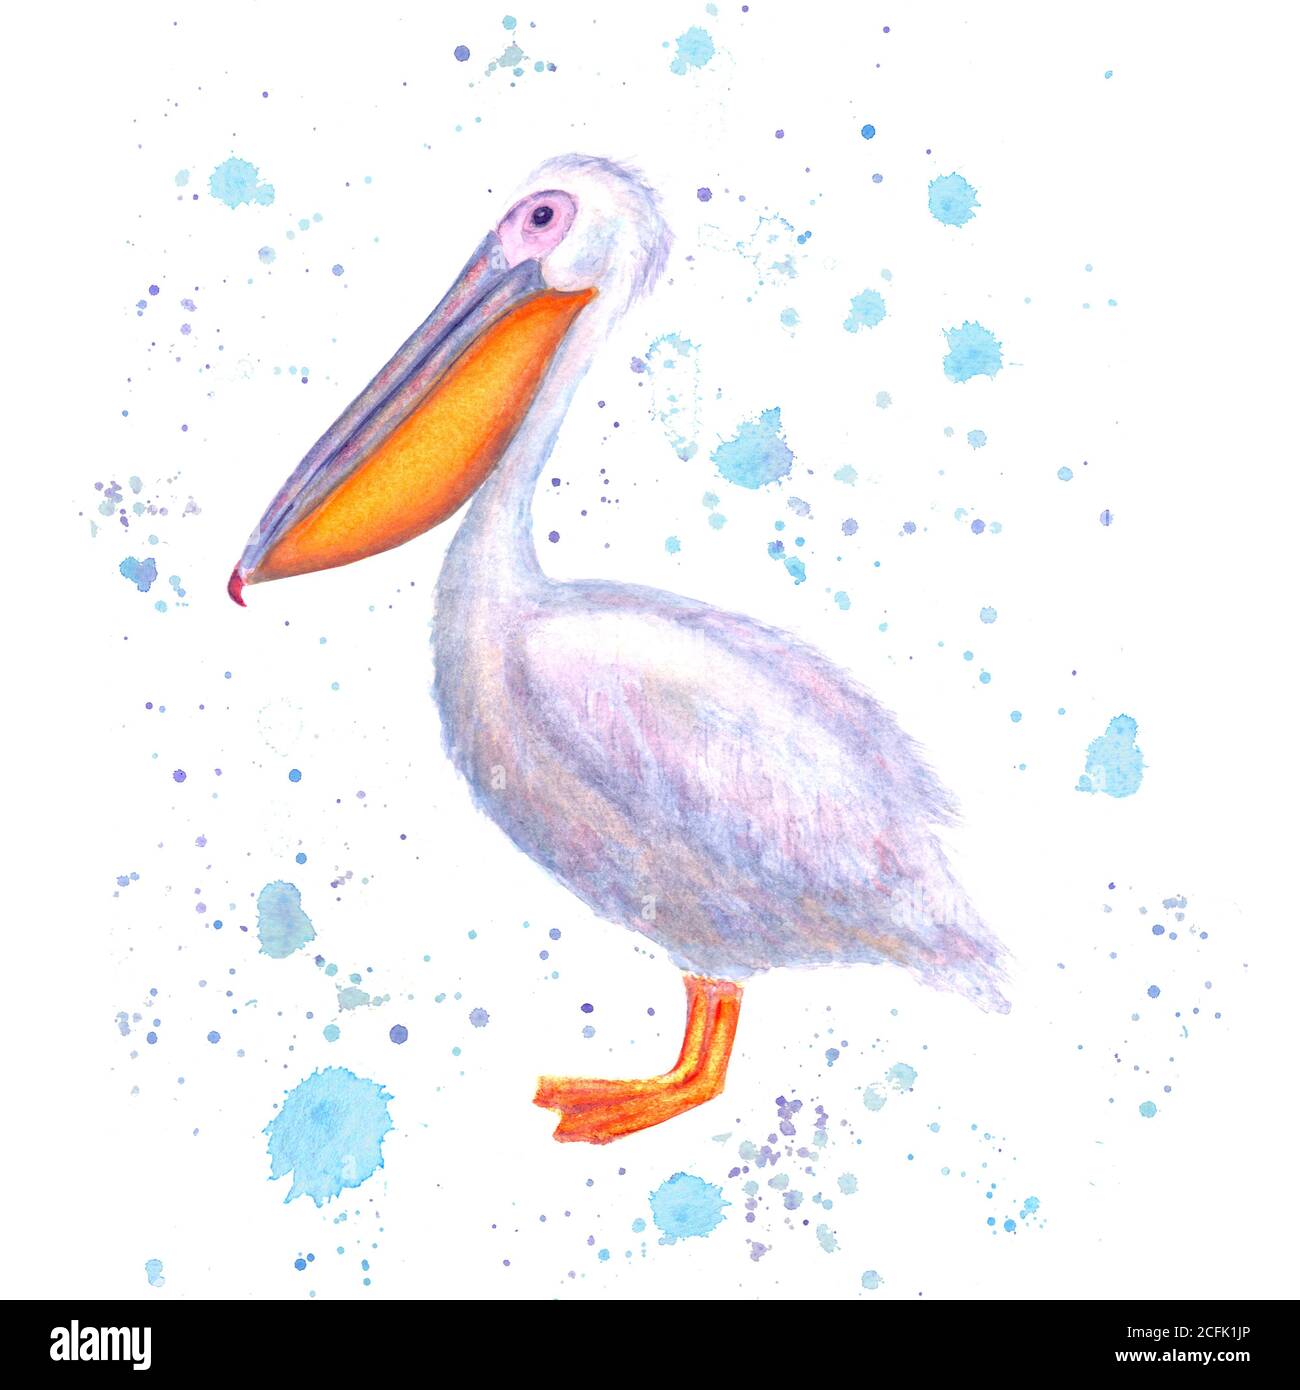 Aquarelle Pelican. Oiseau blanc dessiné à la main avec des éclaboussures bleu aquarelle isolées sur fond blanc. Illustration d'un oiseau de mer. Modèle d'impression pour pos Banque D'Images